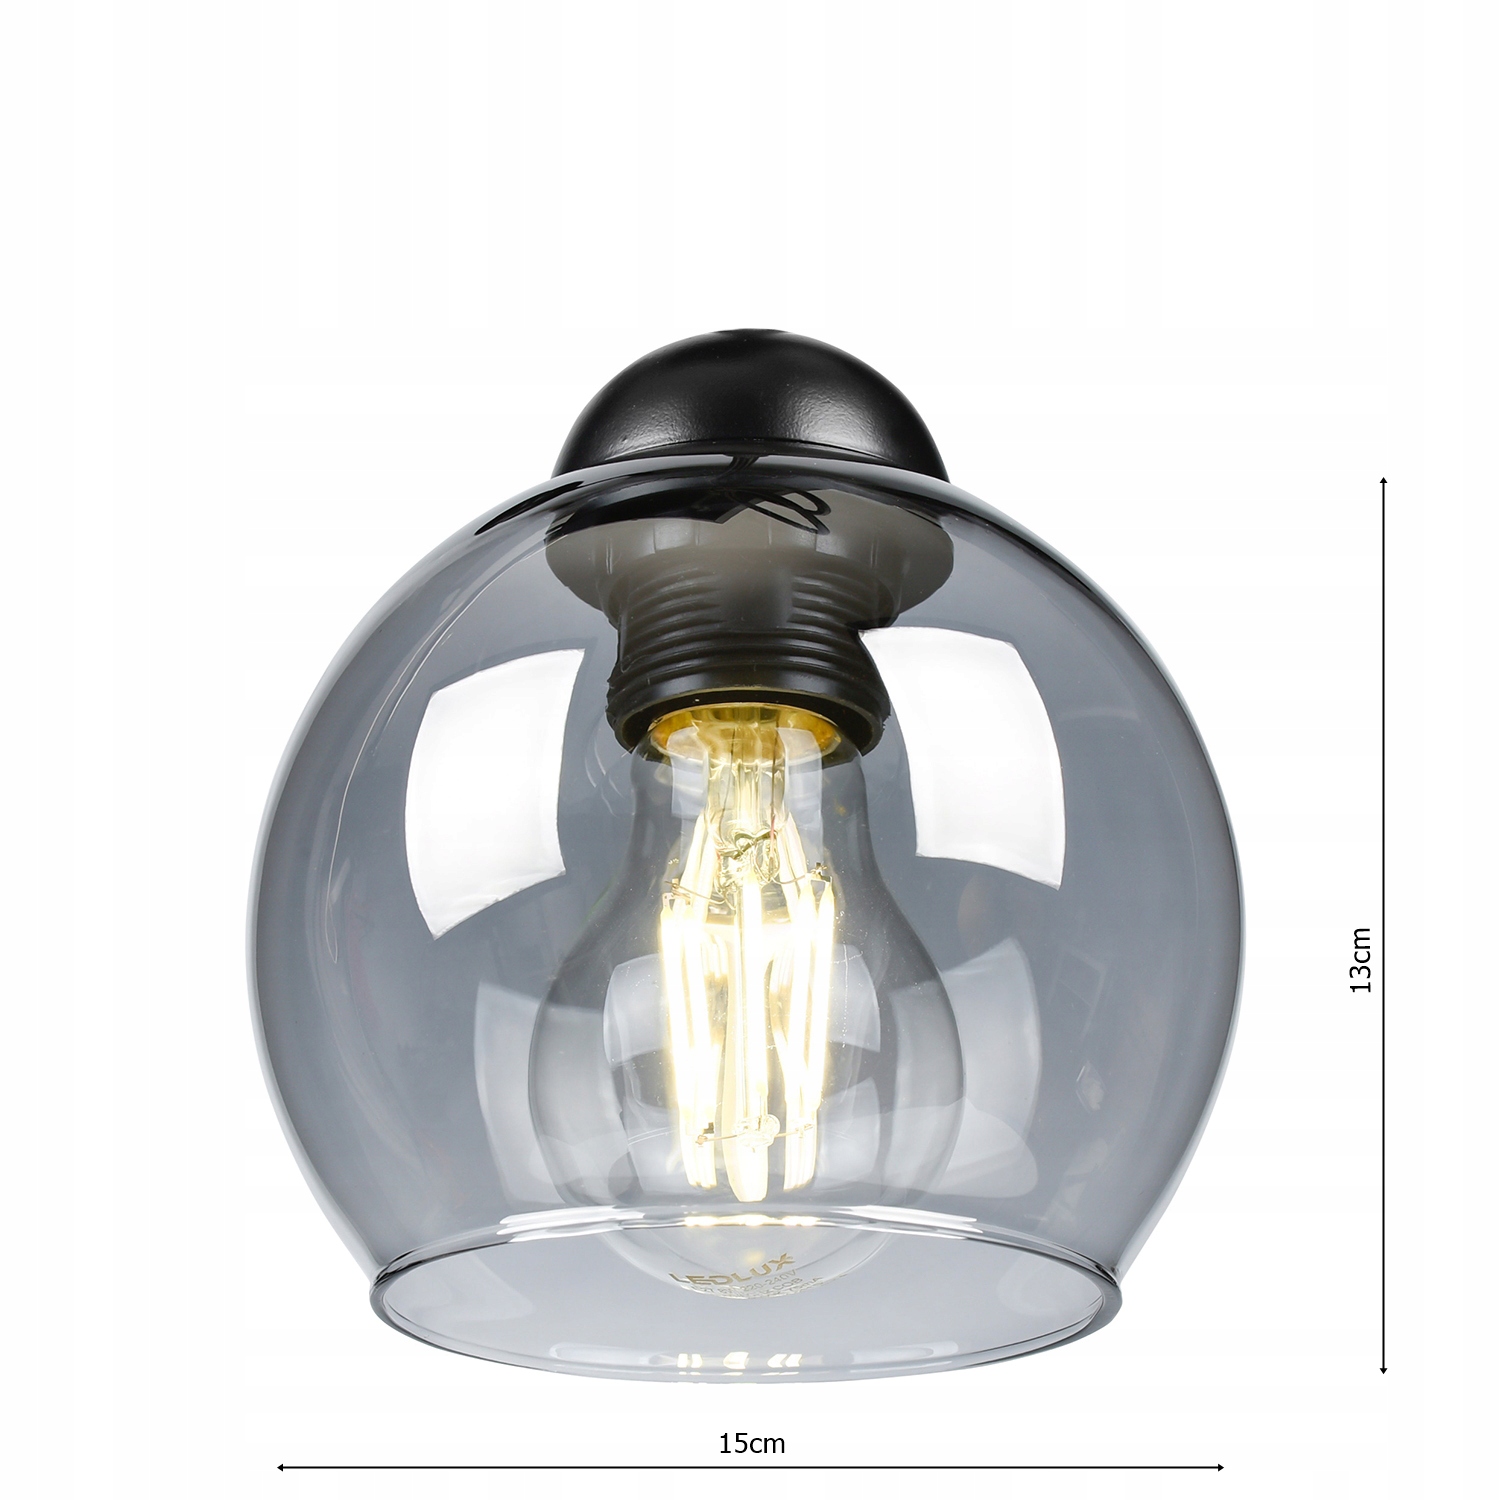 LUBŲ LEMPAS SISTURAS COCON LED lubų lempos ilgis / aukštis 25 cm